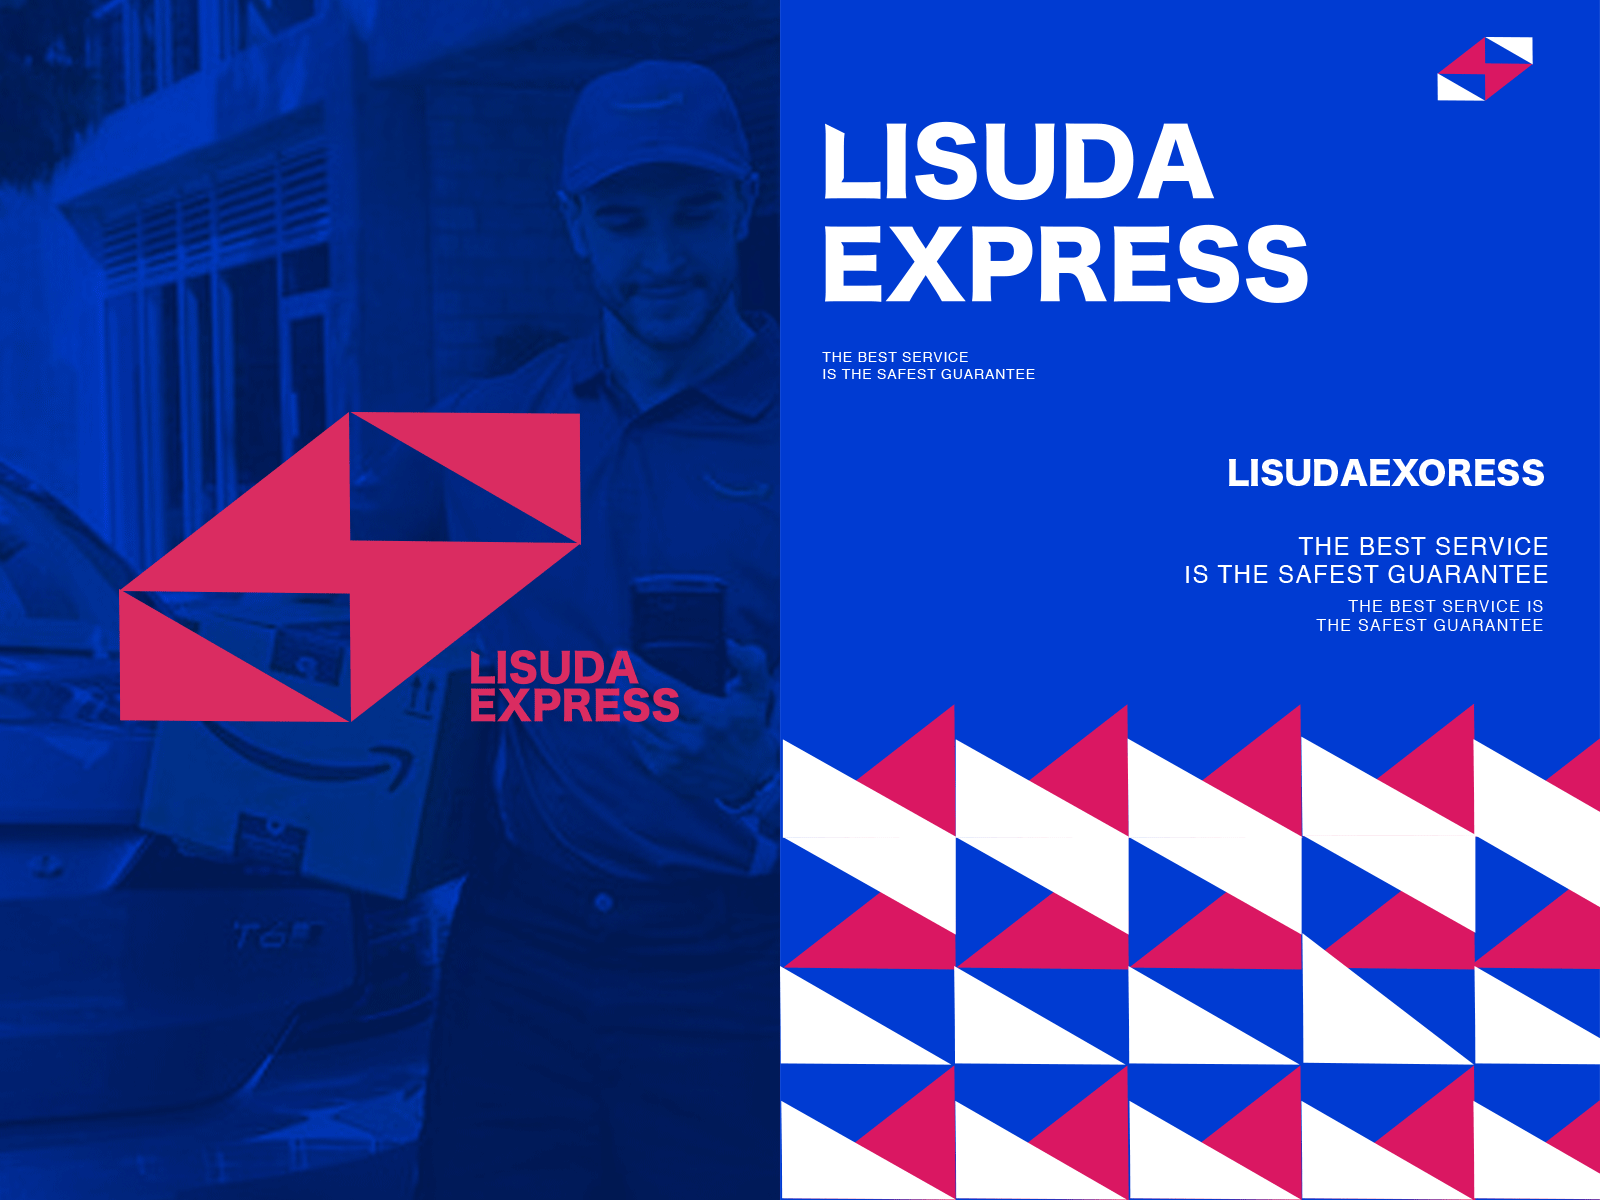 lisuda express branding